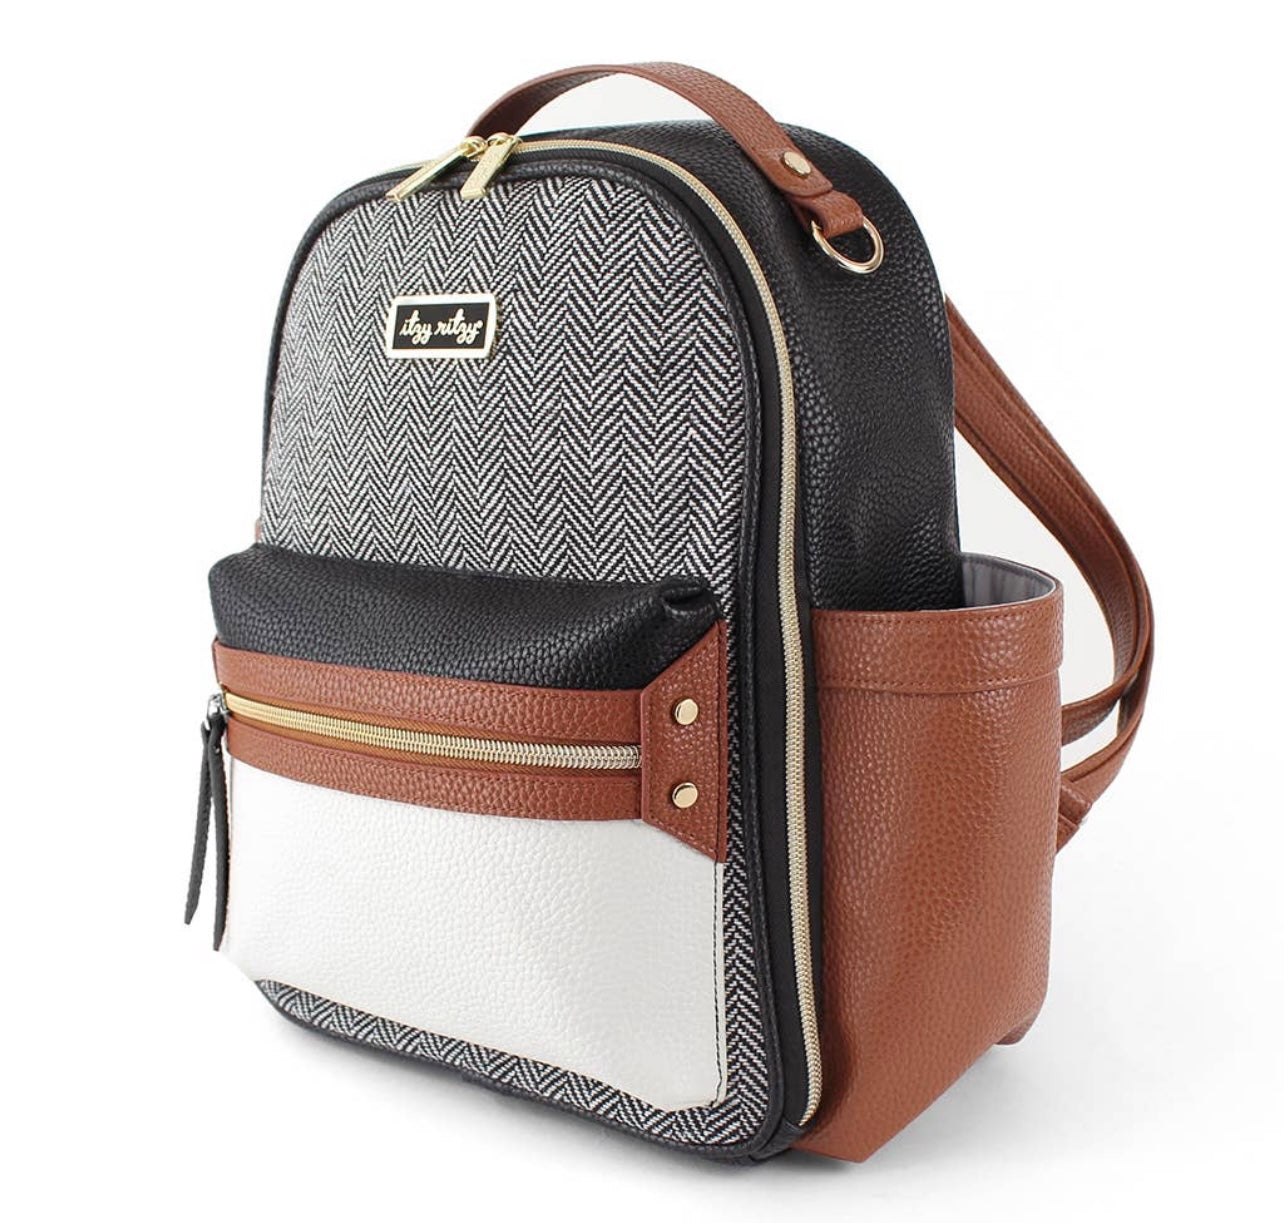 Itzy Mini Backpack Diaper Bag (8 colors)